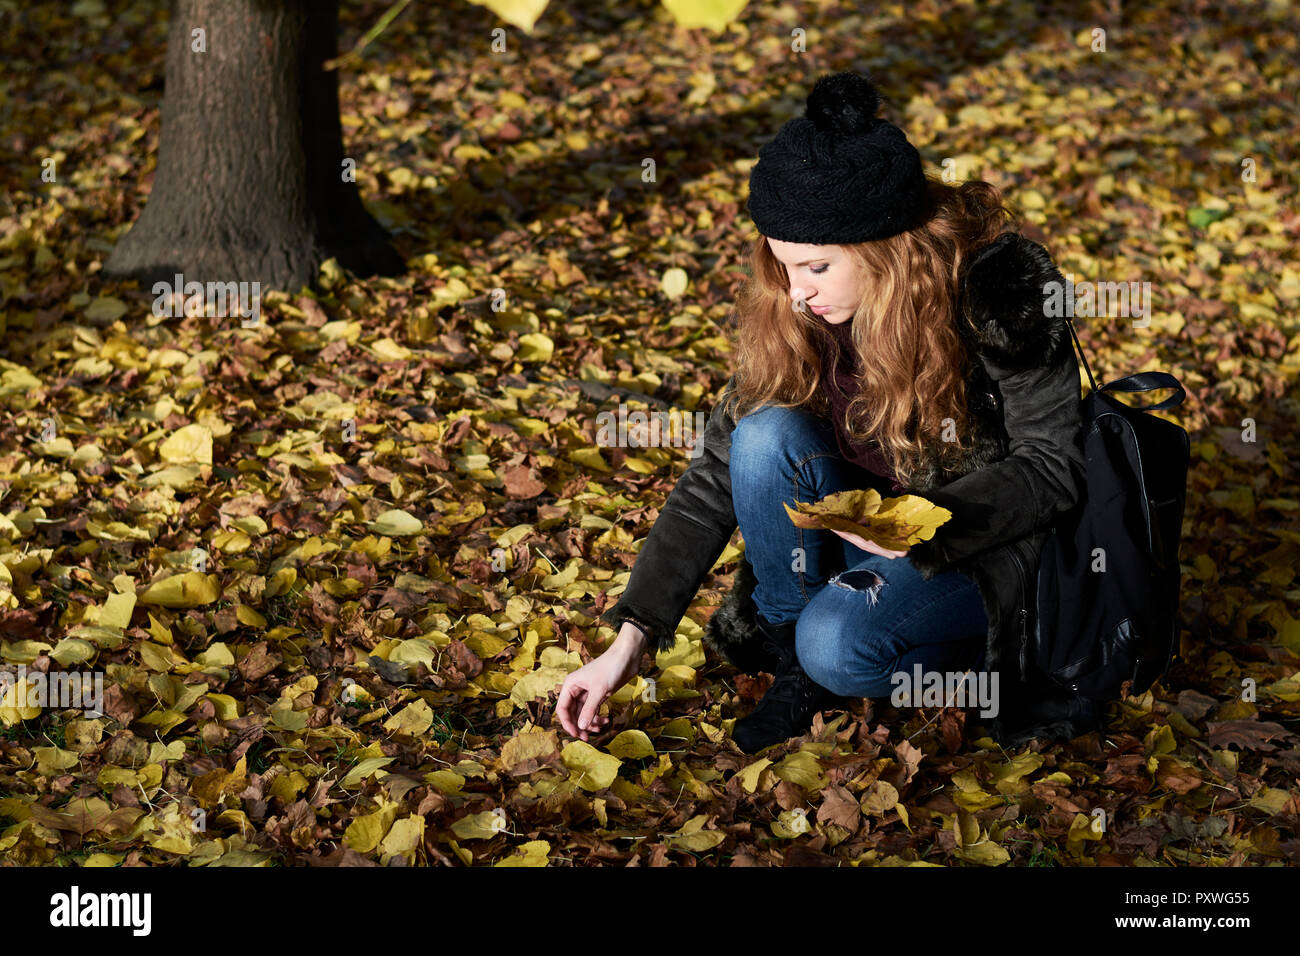 Frau sammeln Blätter im Herbst in einem Park Stockfoto